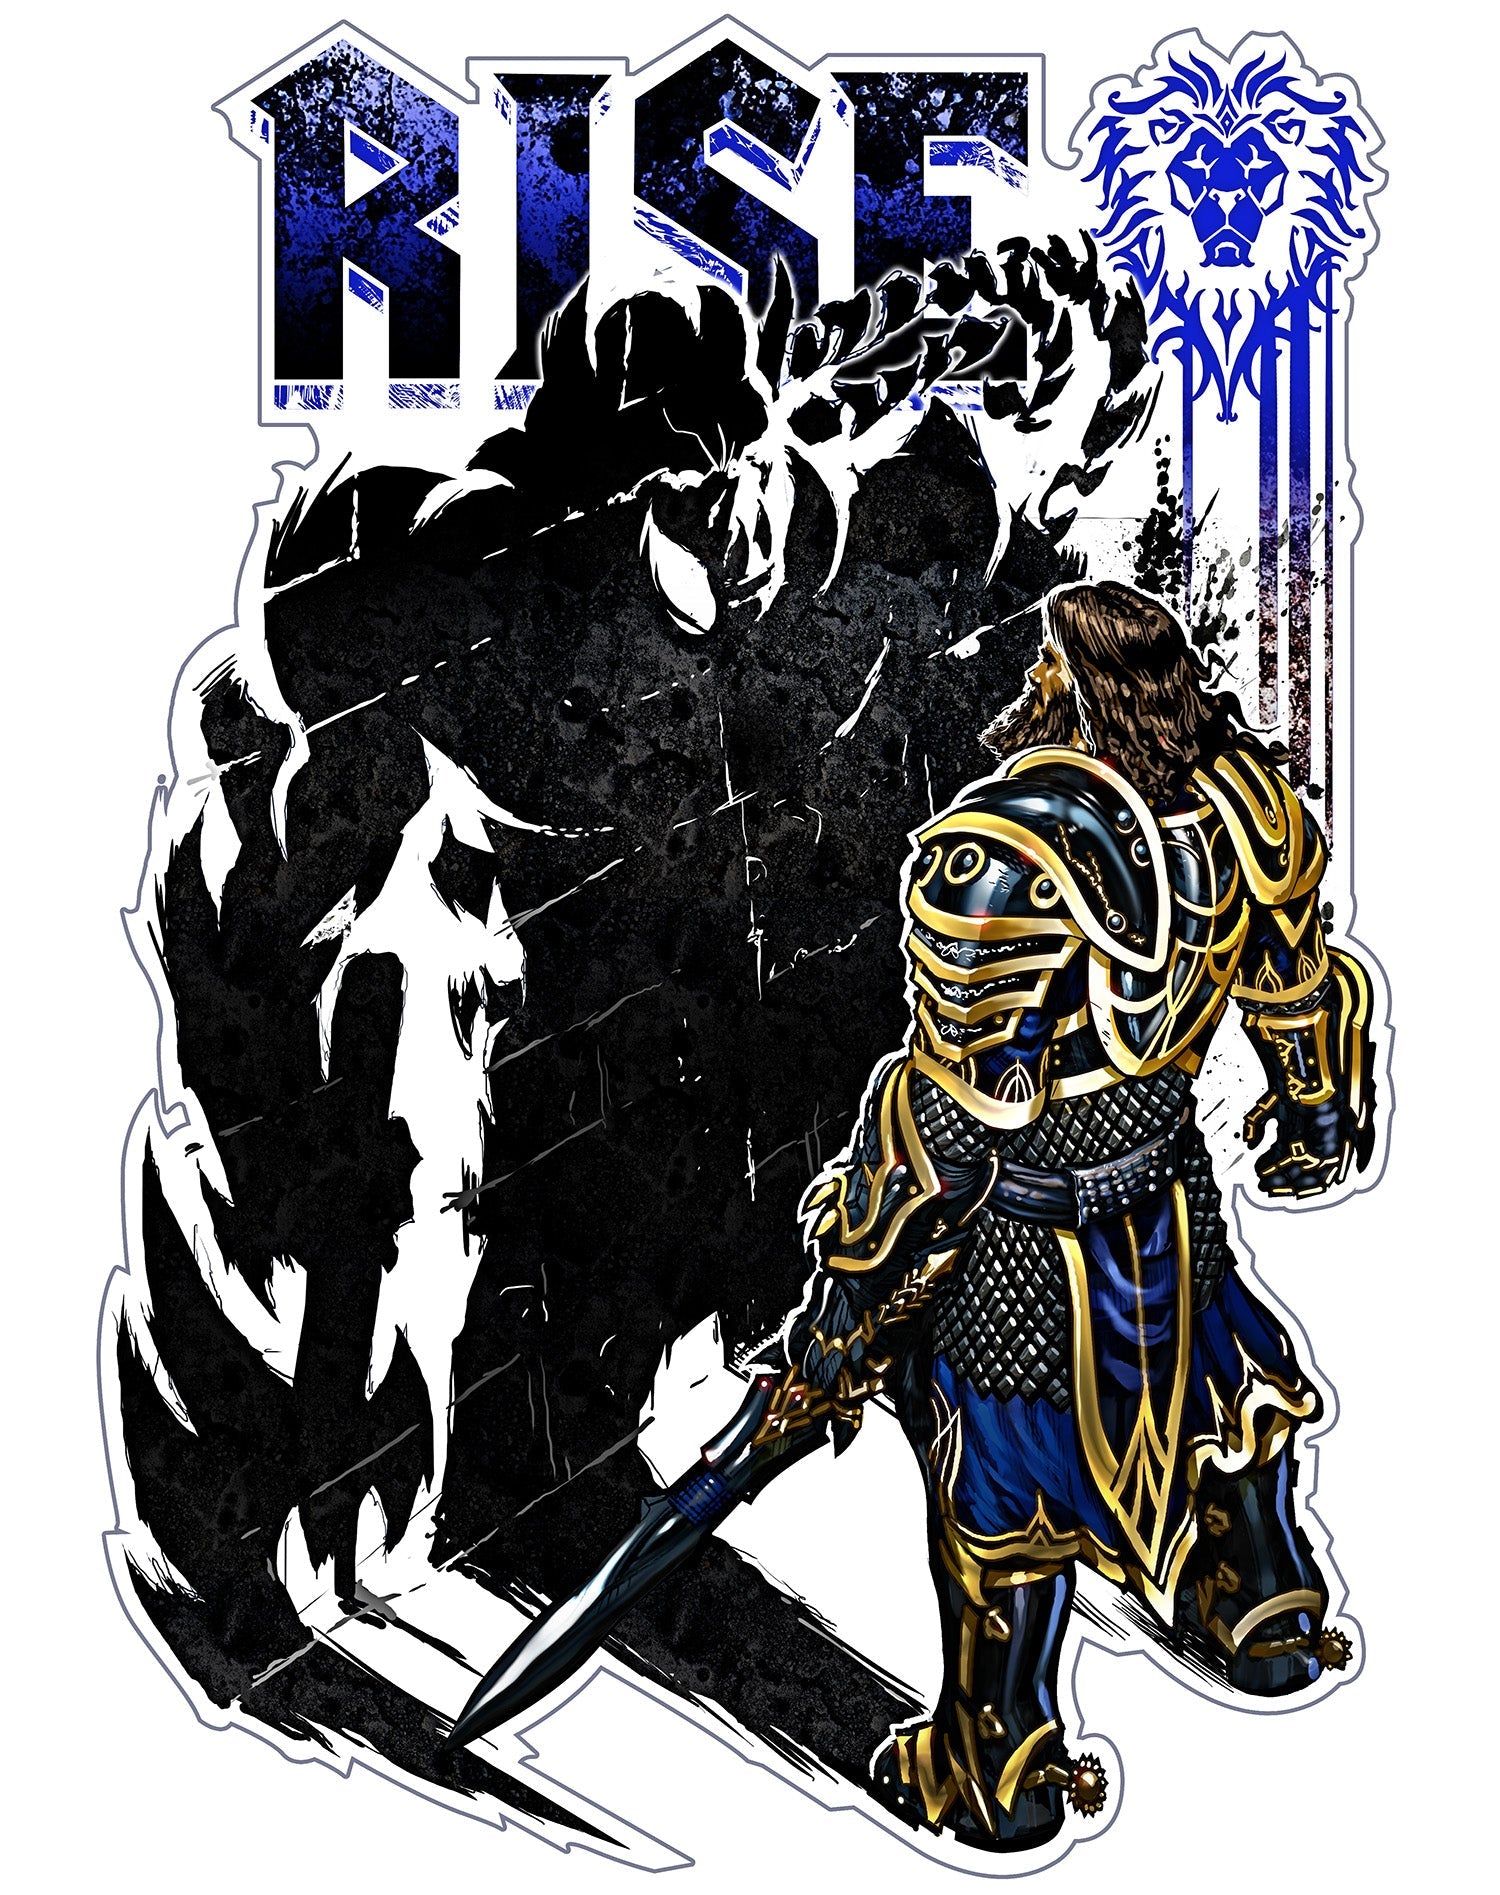 Warcraft Rise Official Men's T-shirt ()